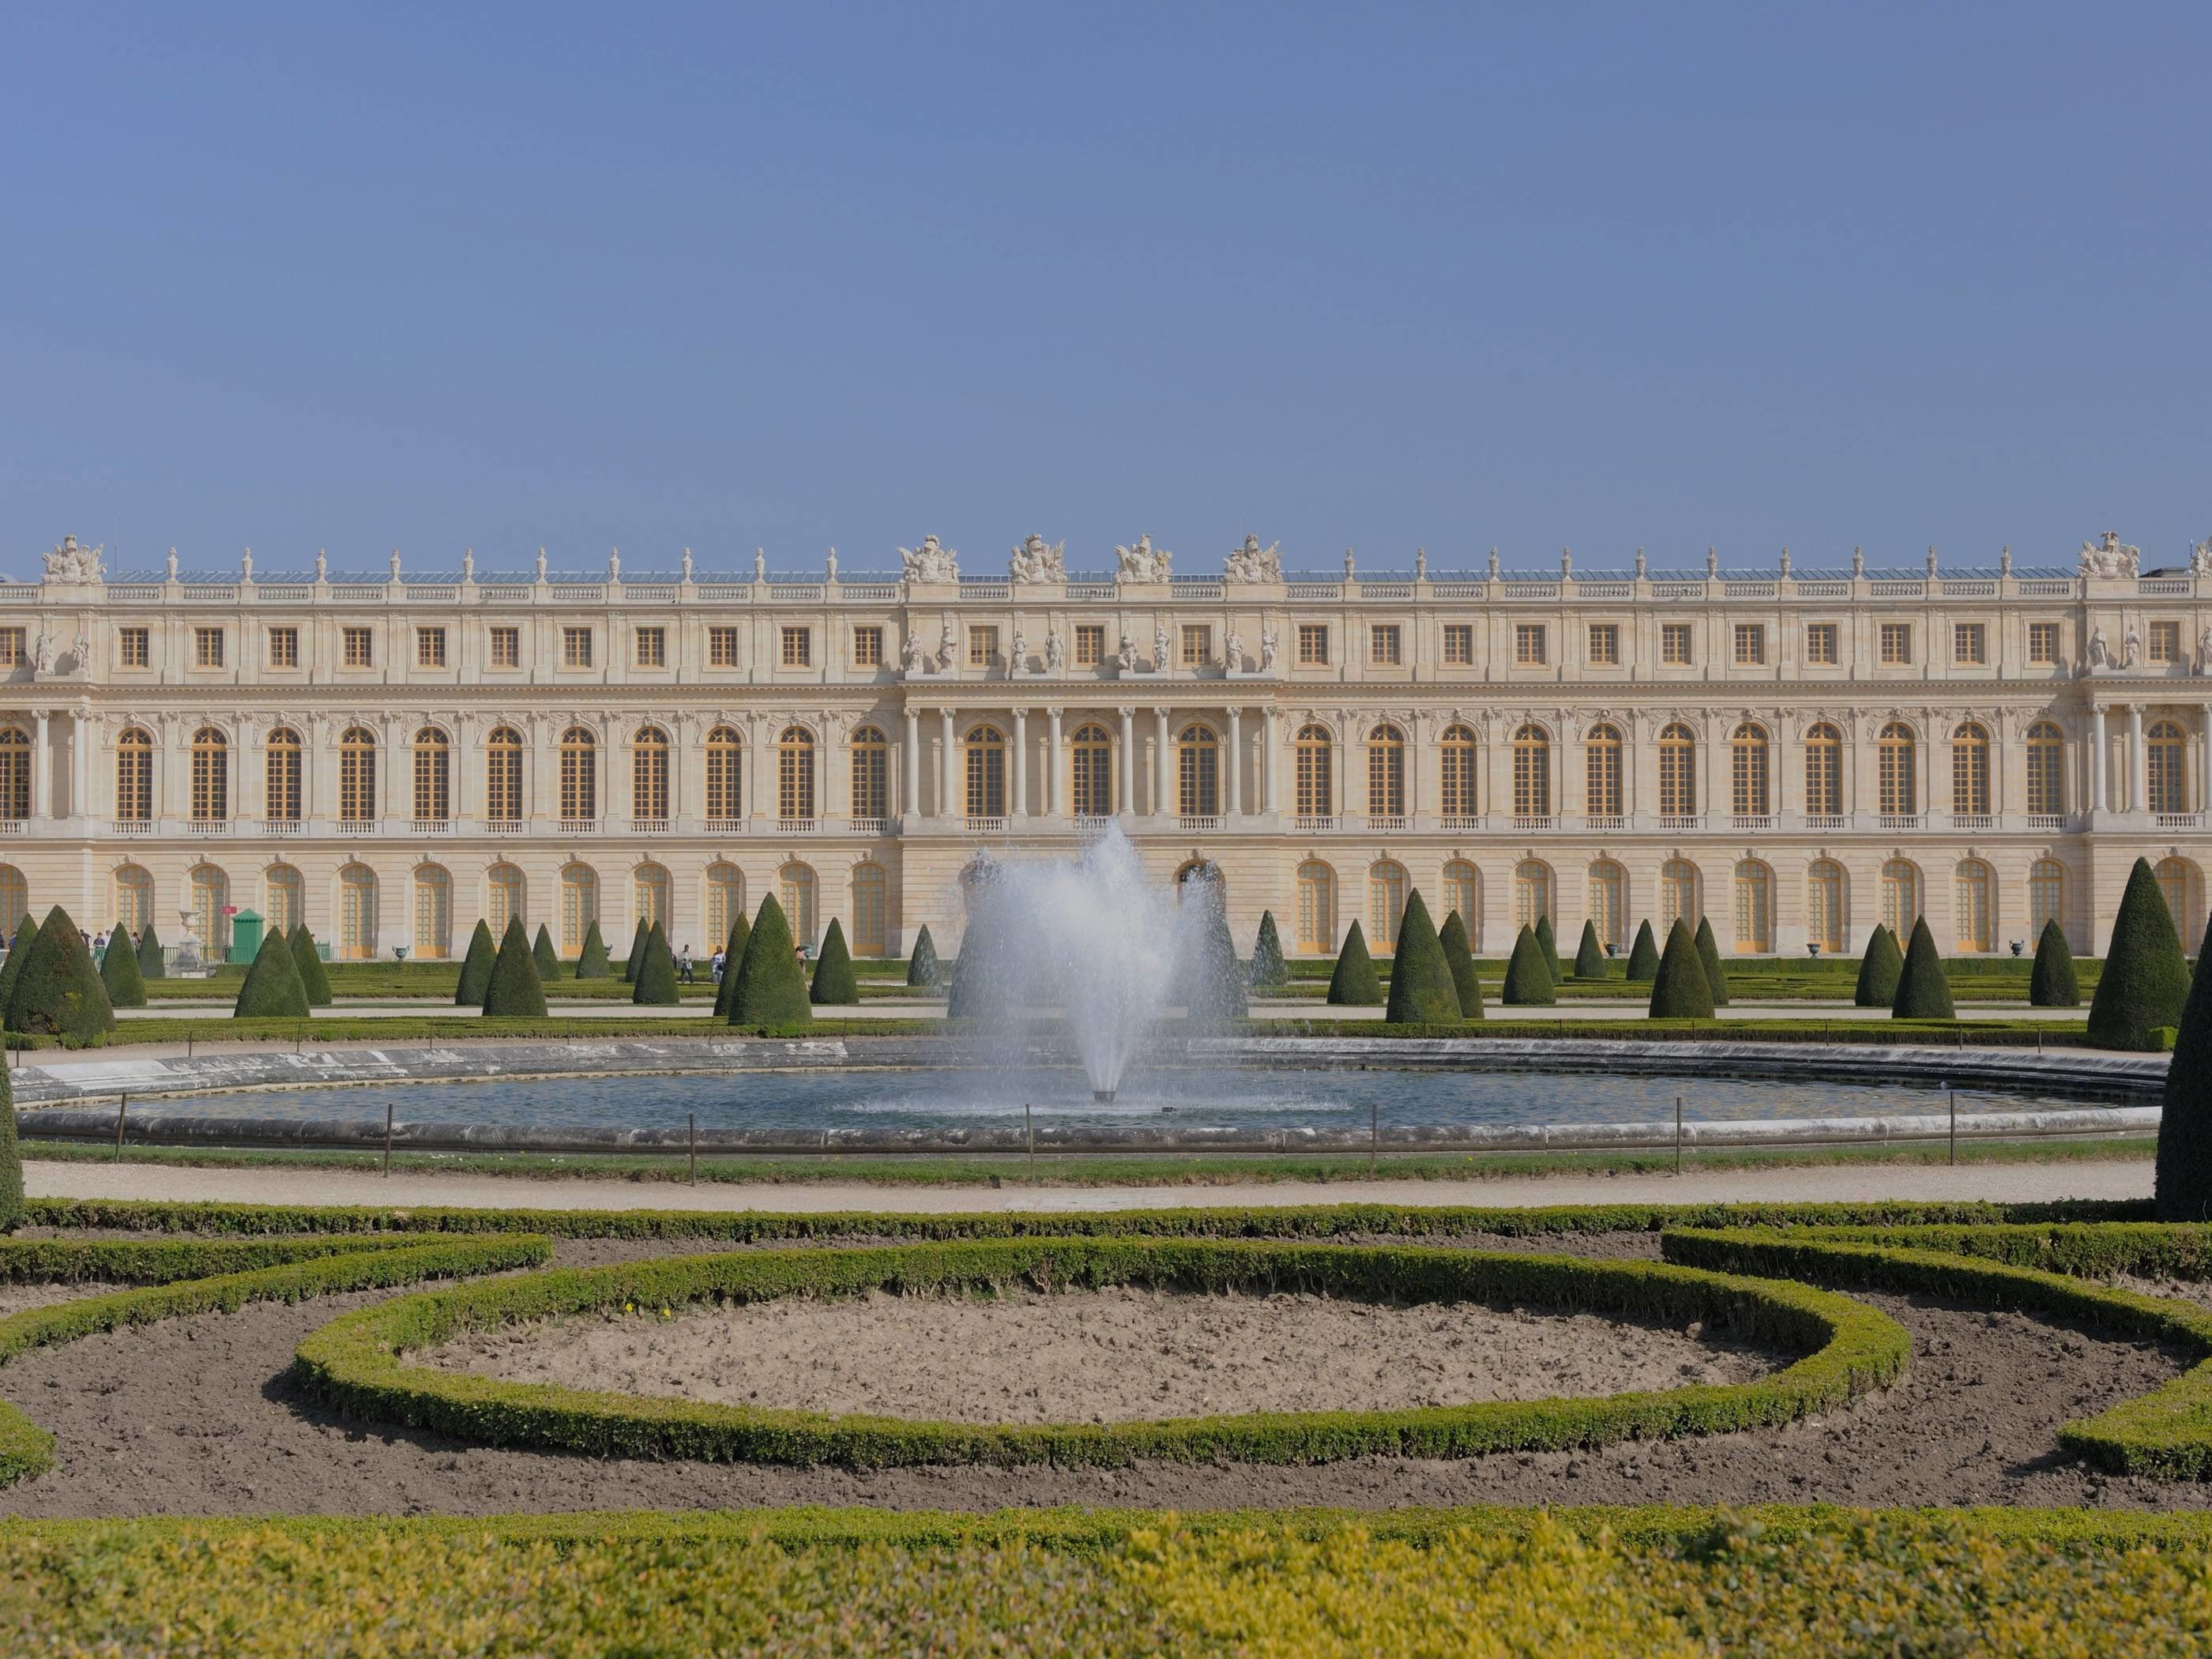 Chateau de versailles. Версальский дворец. Версаль. Версальский дворцово-парковый комплекс, Франция. Королевский дворец в Версале. Дворец и парк в Версале Франция.